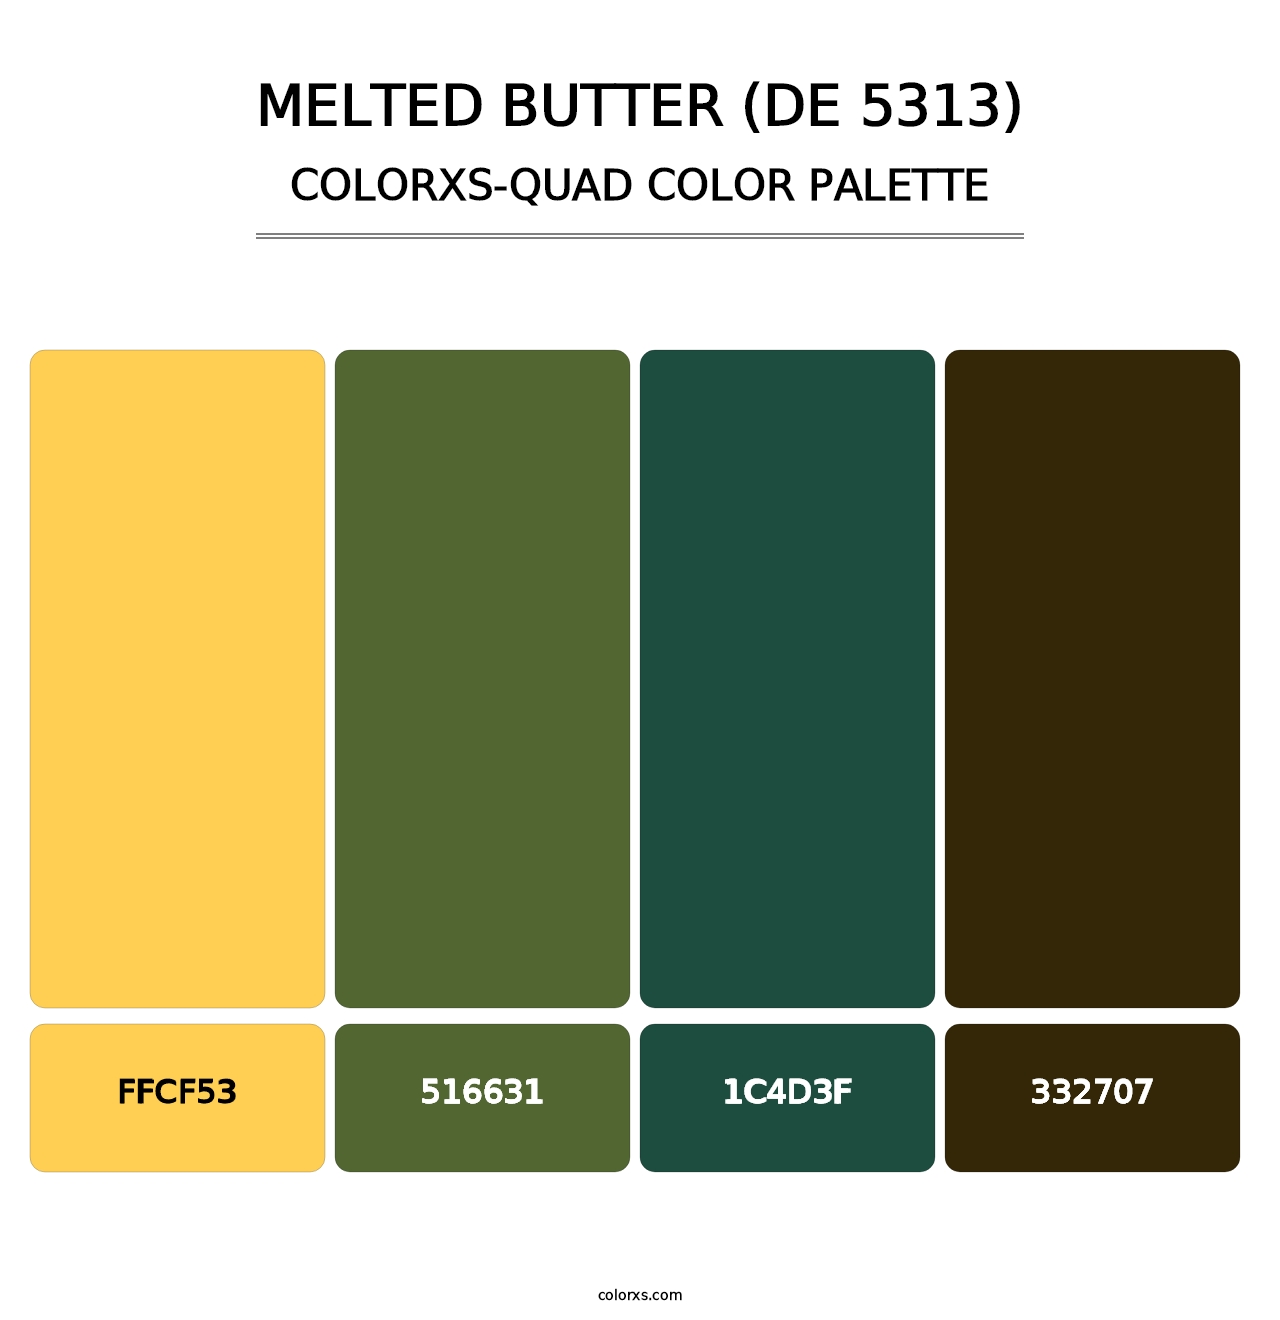 Melted Butter (DE 5313) - Colorxs Quad Palette